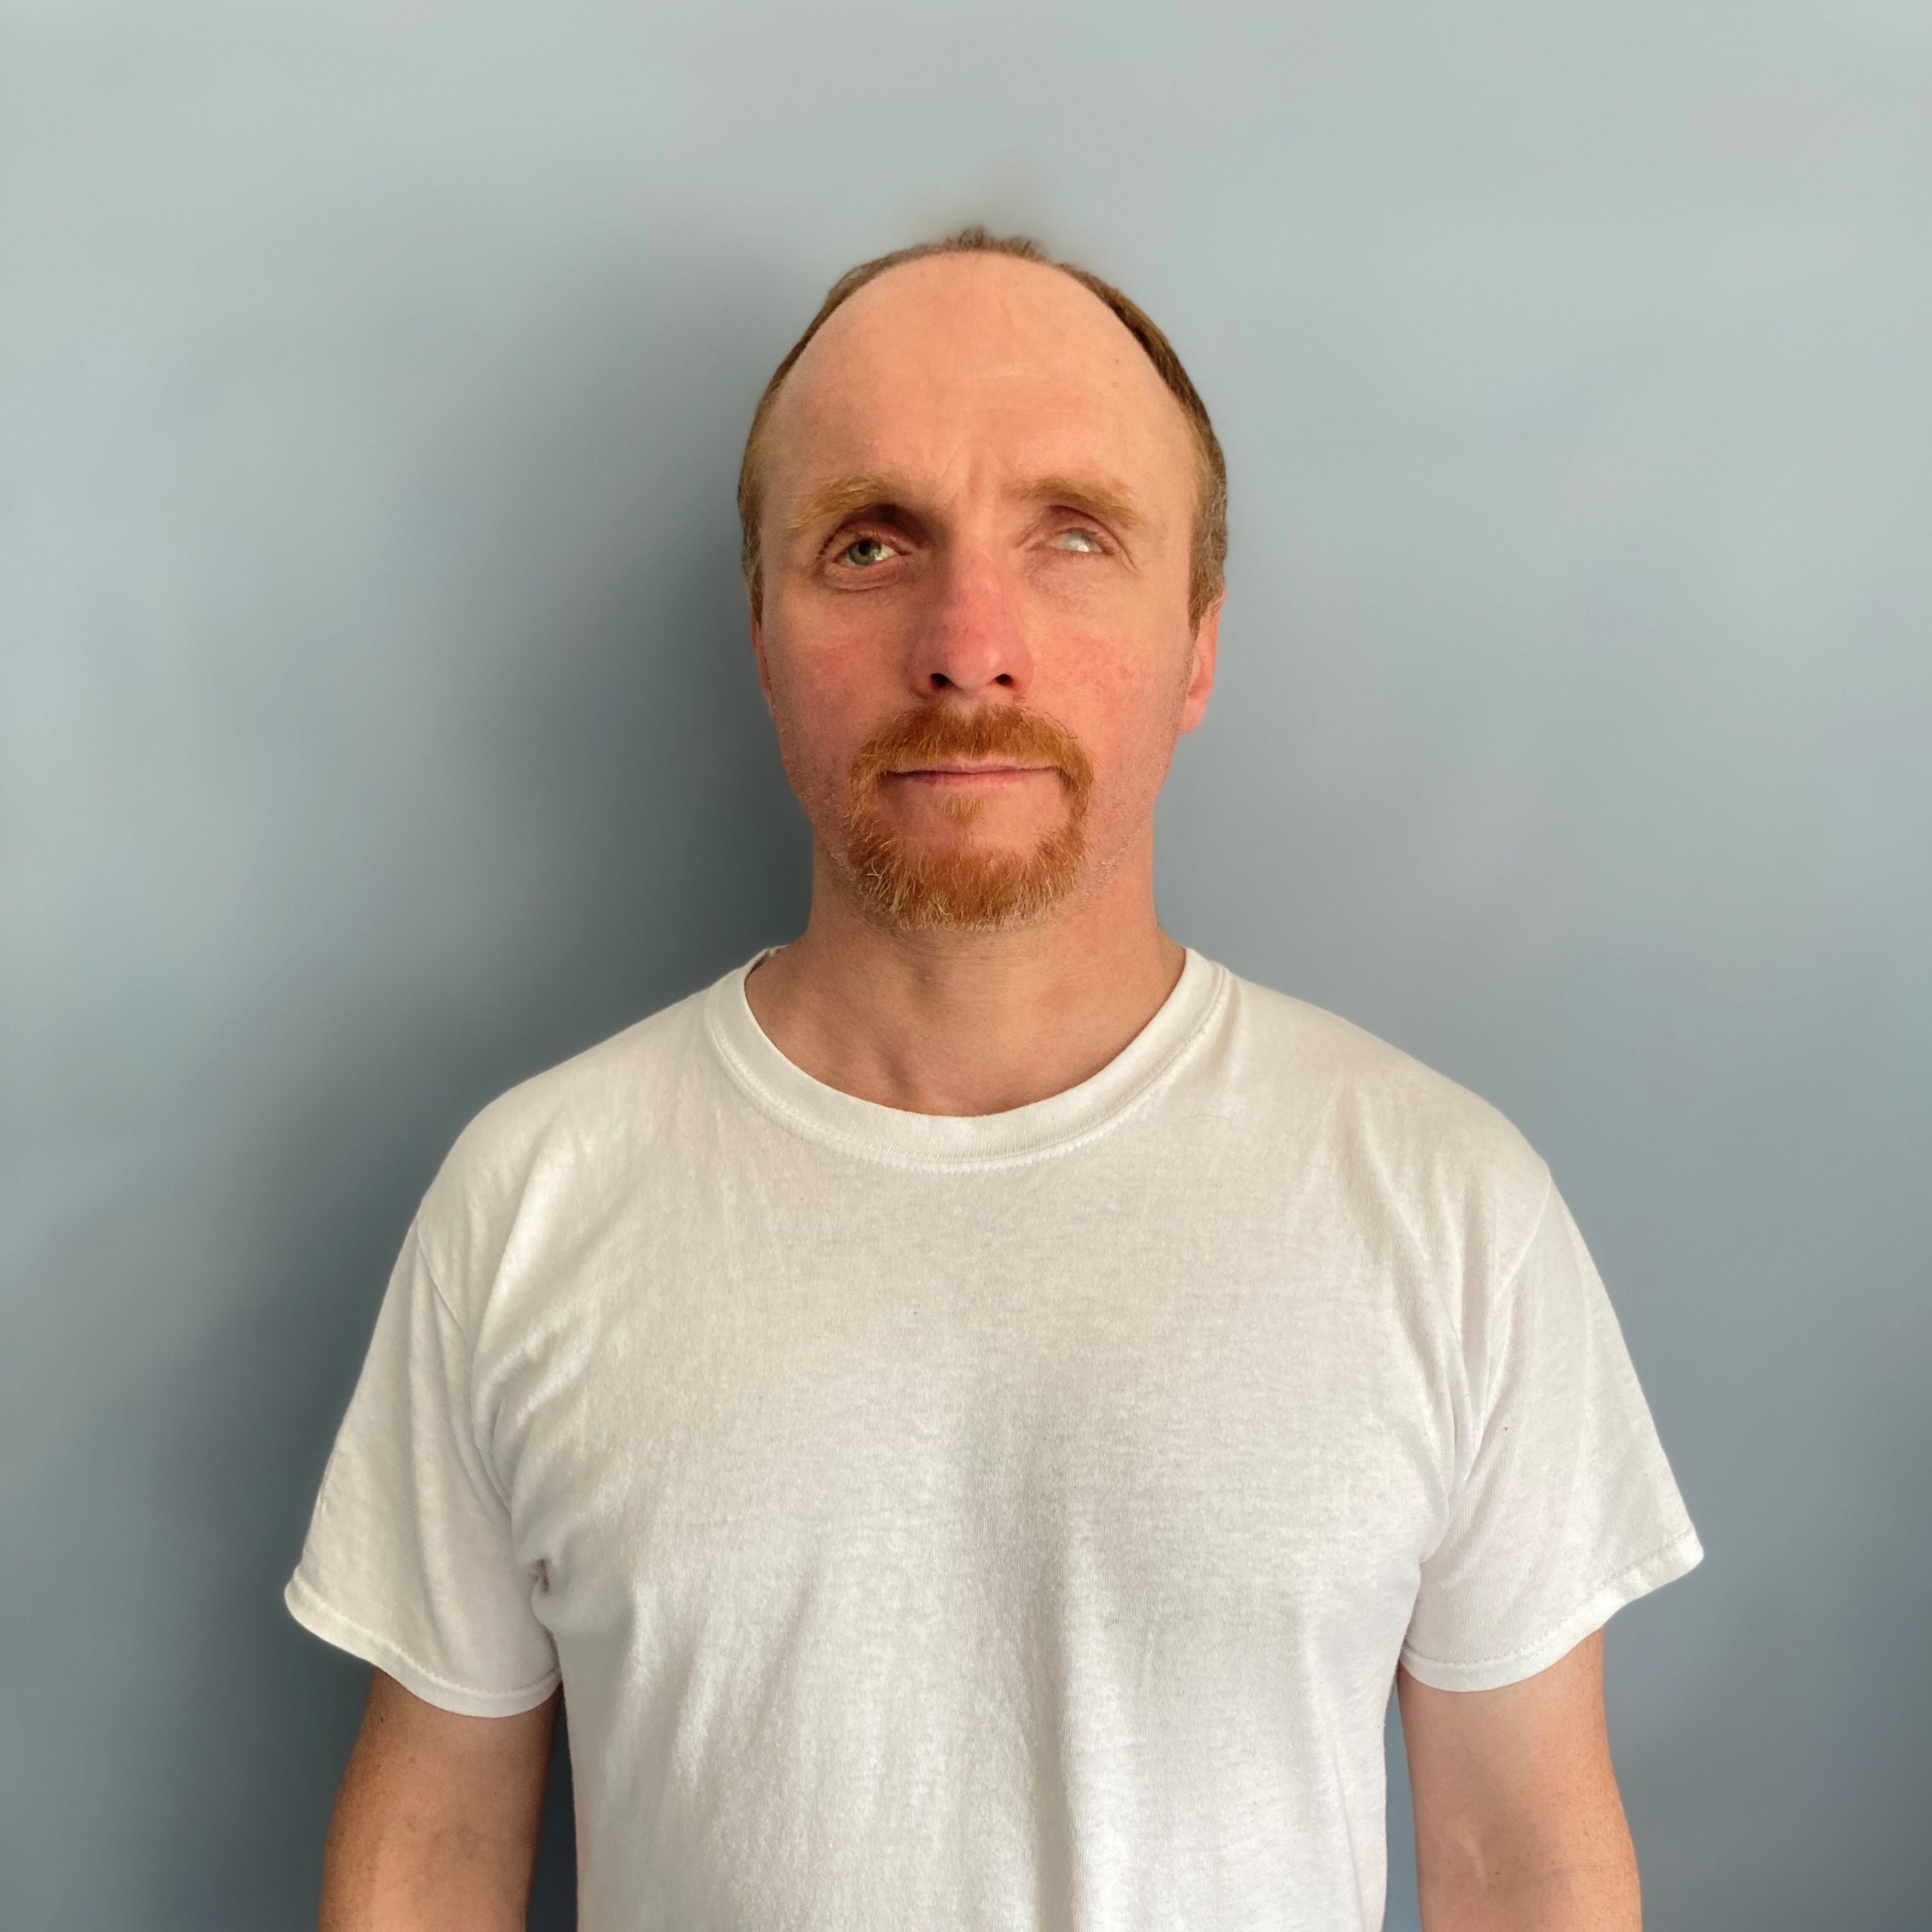 Markus Böttner, service après-vente, cheveux courts brun-roux, front haut et barbe brun-roux, se tient devant un mur gris, vêtu d'un T-shirt blanc, et regarde aimablement la caméra.